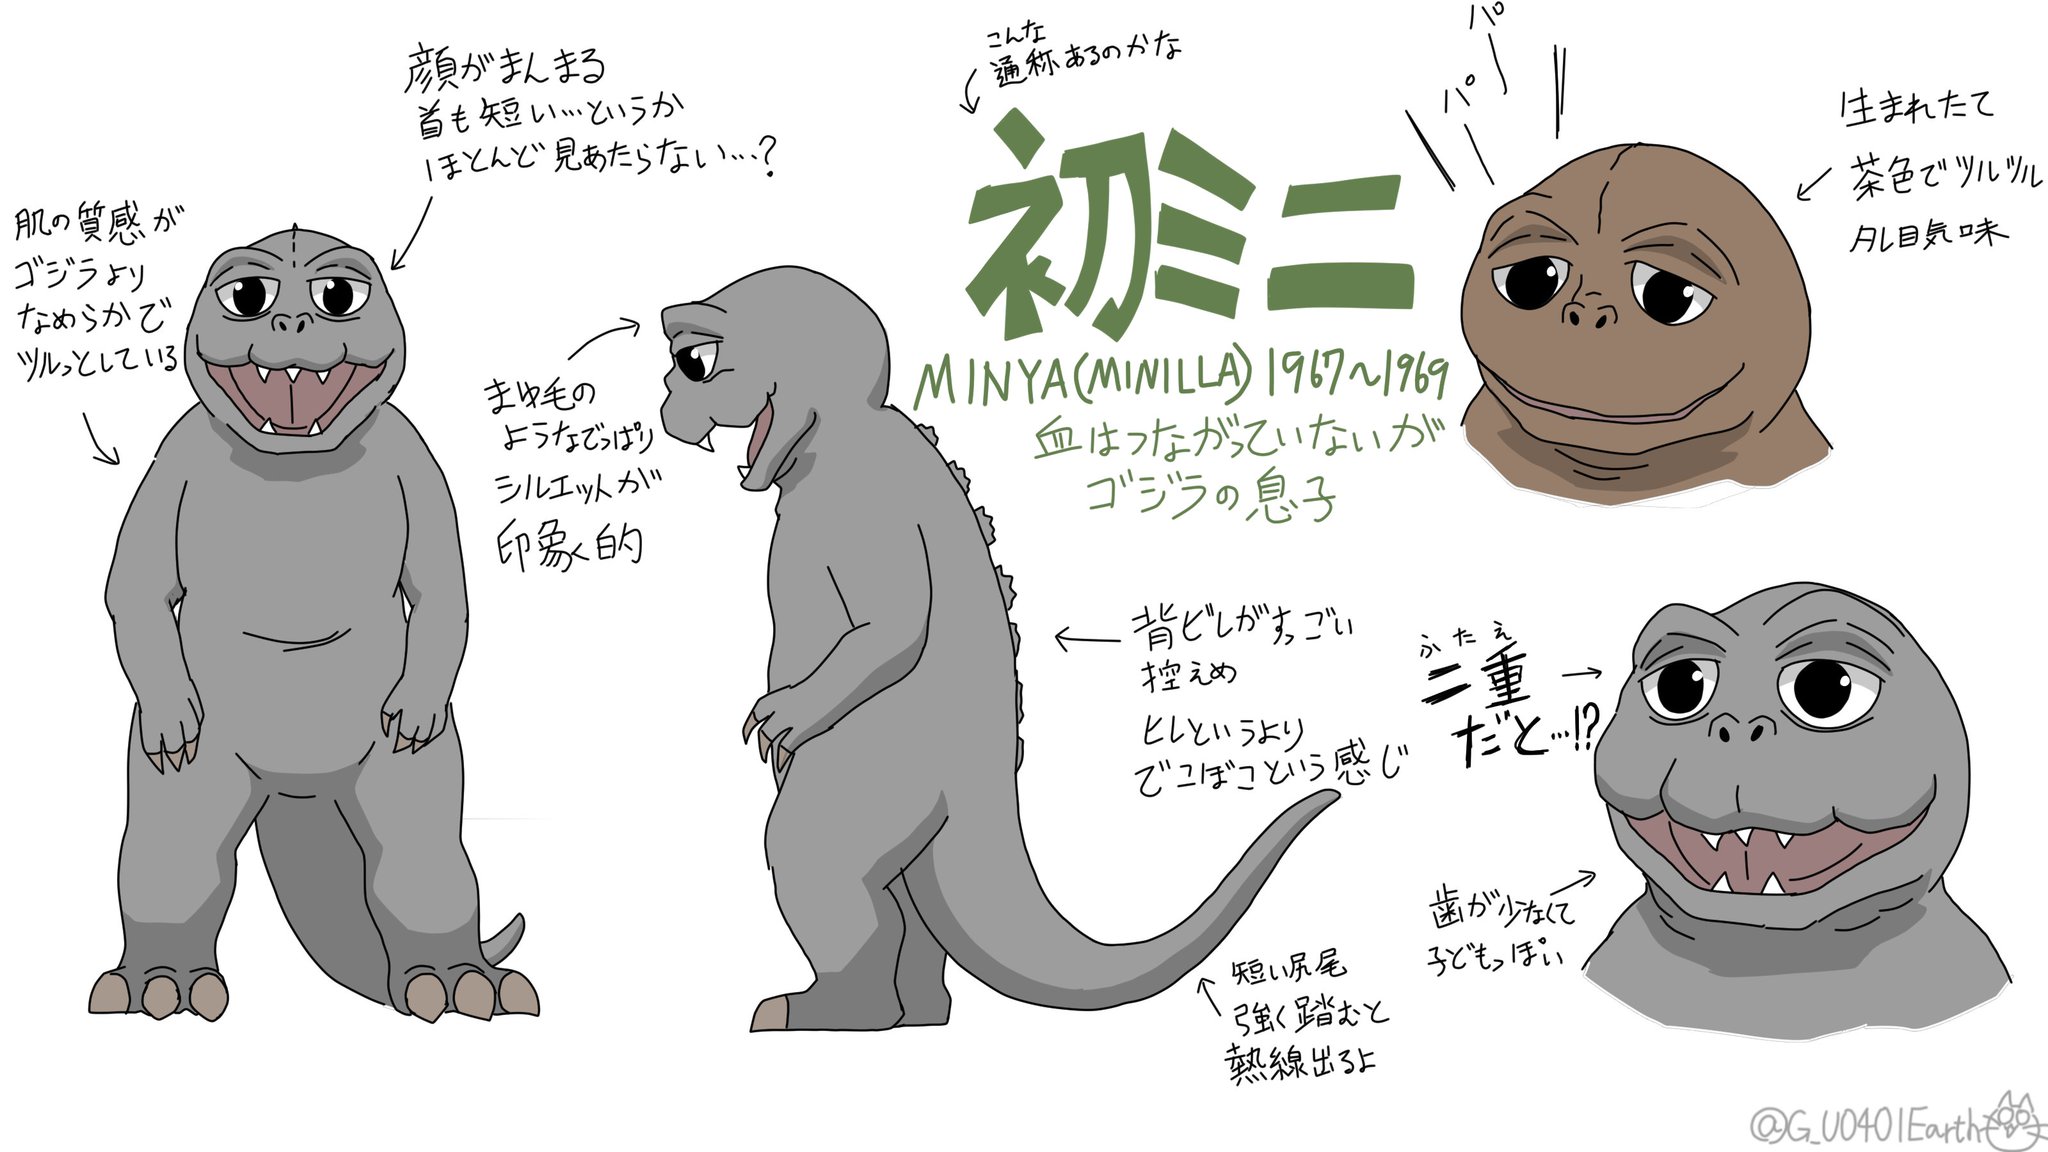 猫怪獣ノラ 初代ミニラの デフォルメイラスト練習 ゴジラ Godzilla ミニラ T Co Fiadbz2ofk Twitter